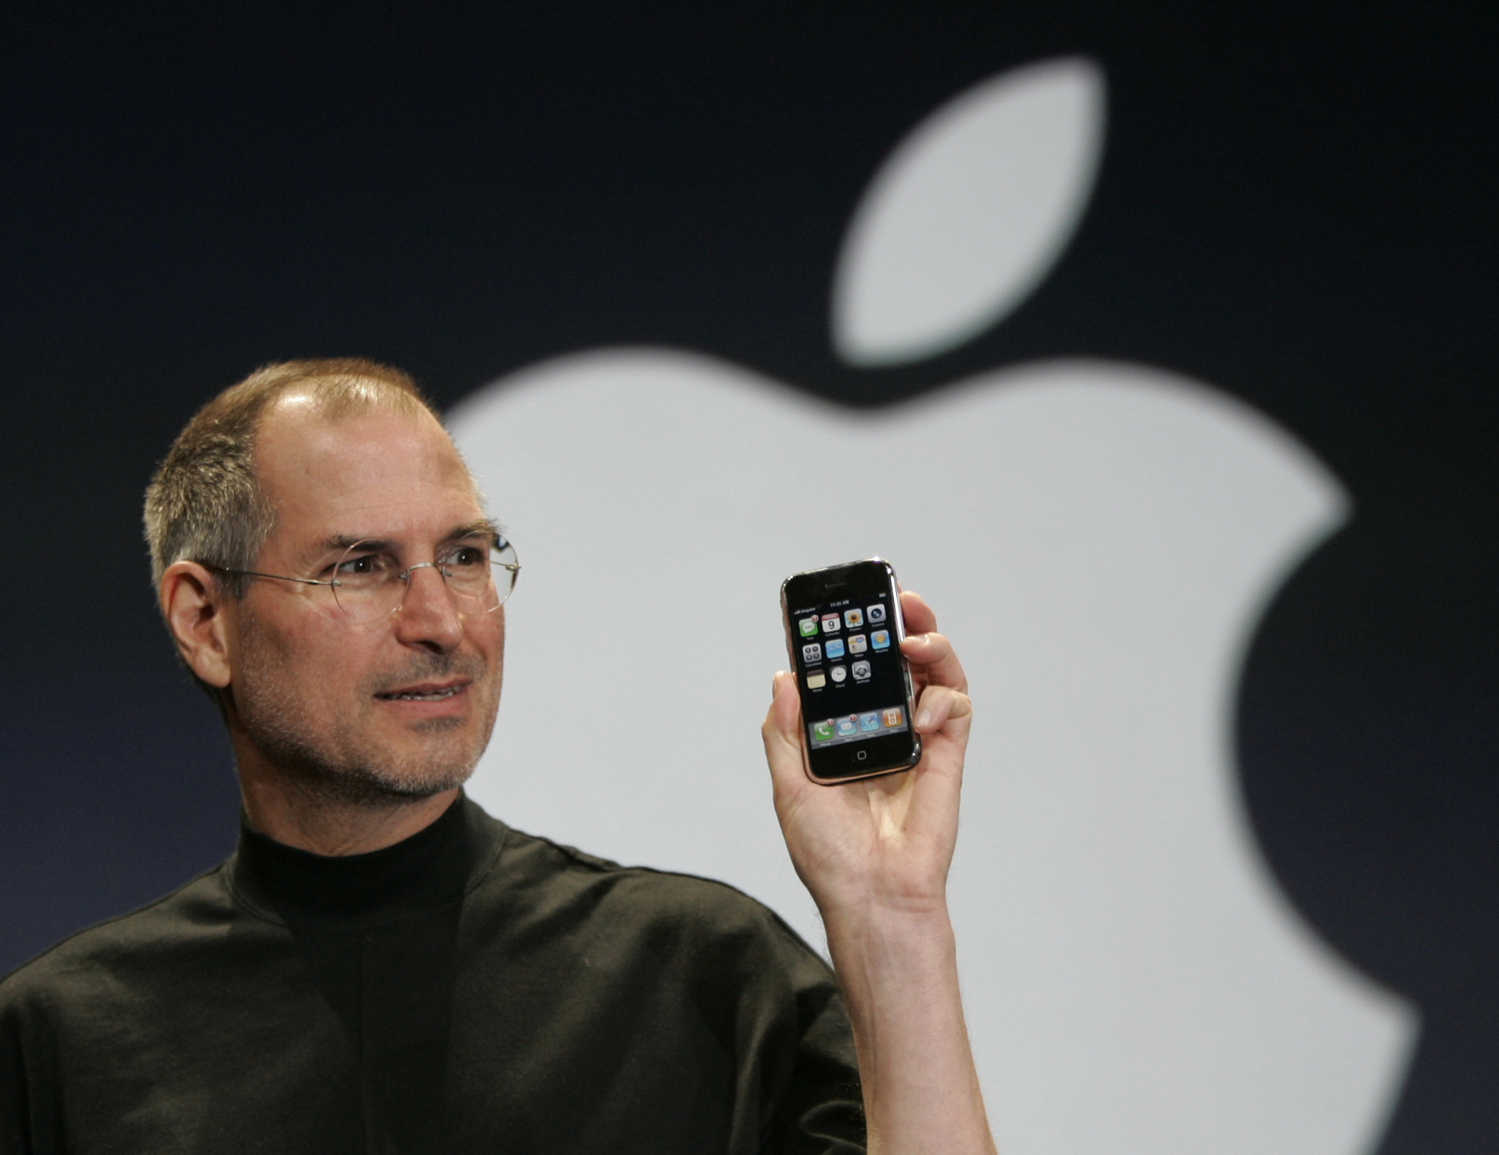 5. října 2011 nás opustil spoluzakladatel firmy Apple Steve Jobs, který pomohl vzniku a popularizaci dnešních dotykových smartphonů. Zemřel na rakovinu slinivky břišní.